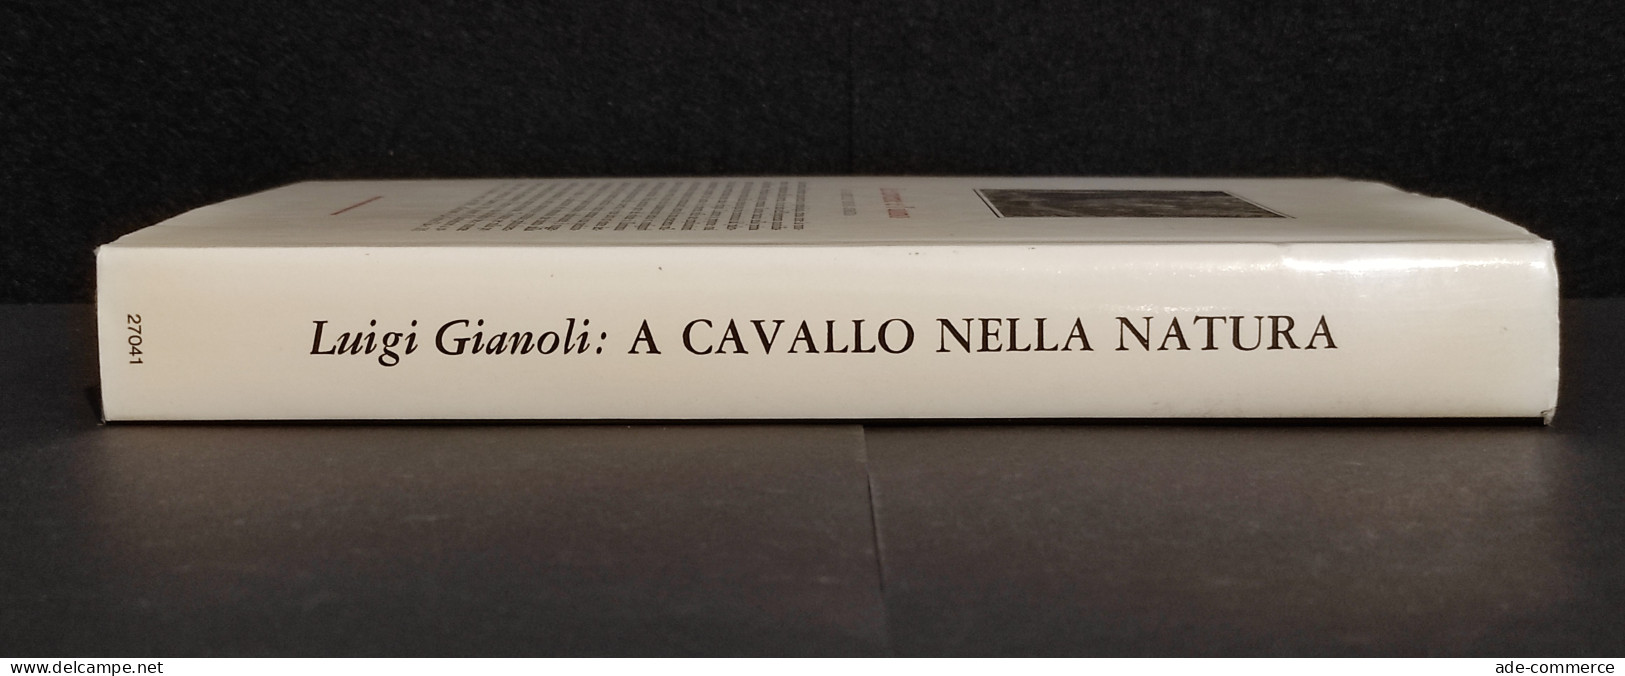 A Cavallo Nella Natura - L. Gianoli - Ed. Longanesi - 1974 - Animali Da Compagnia